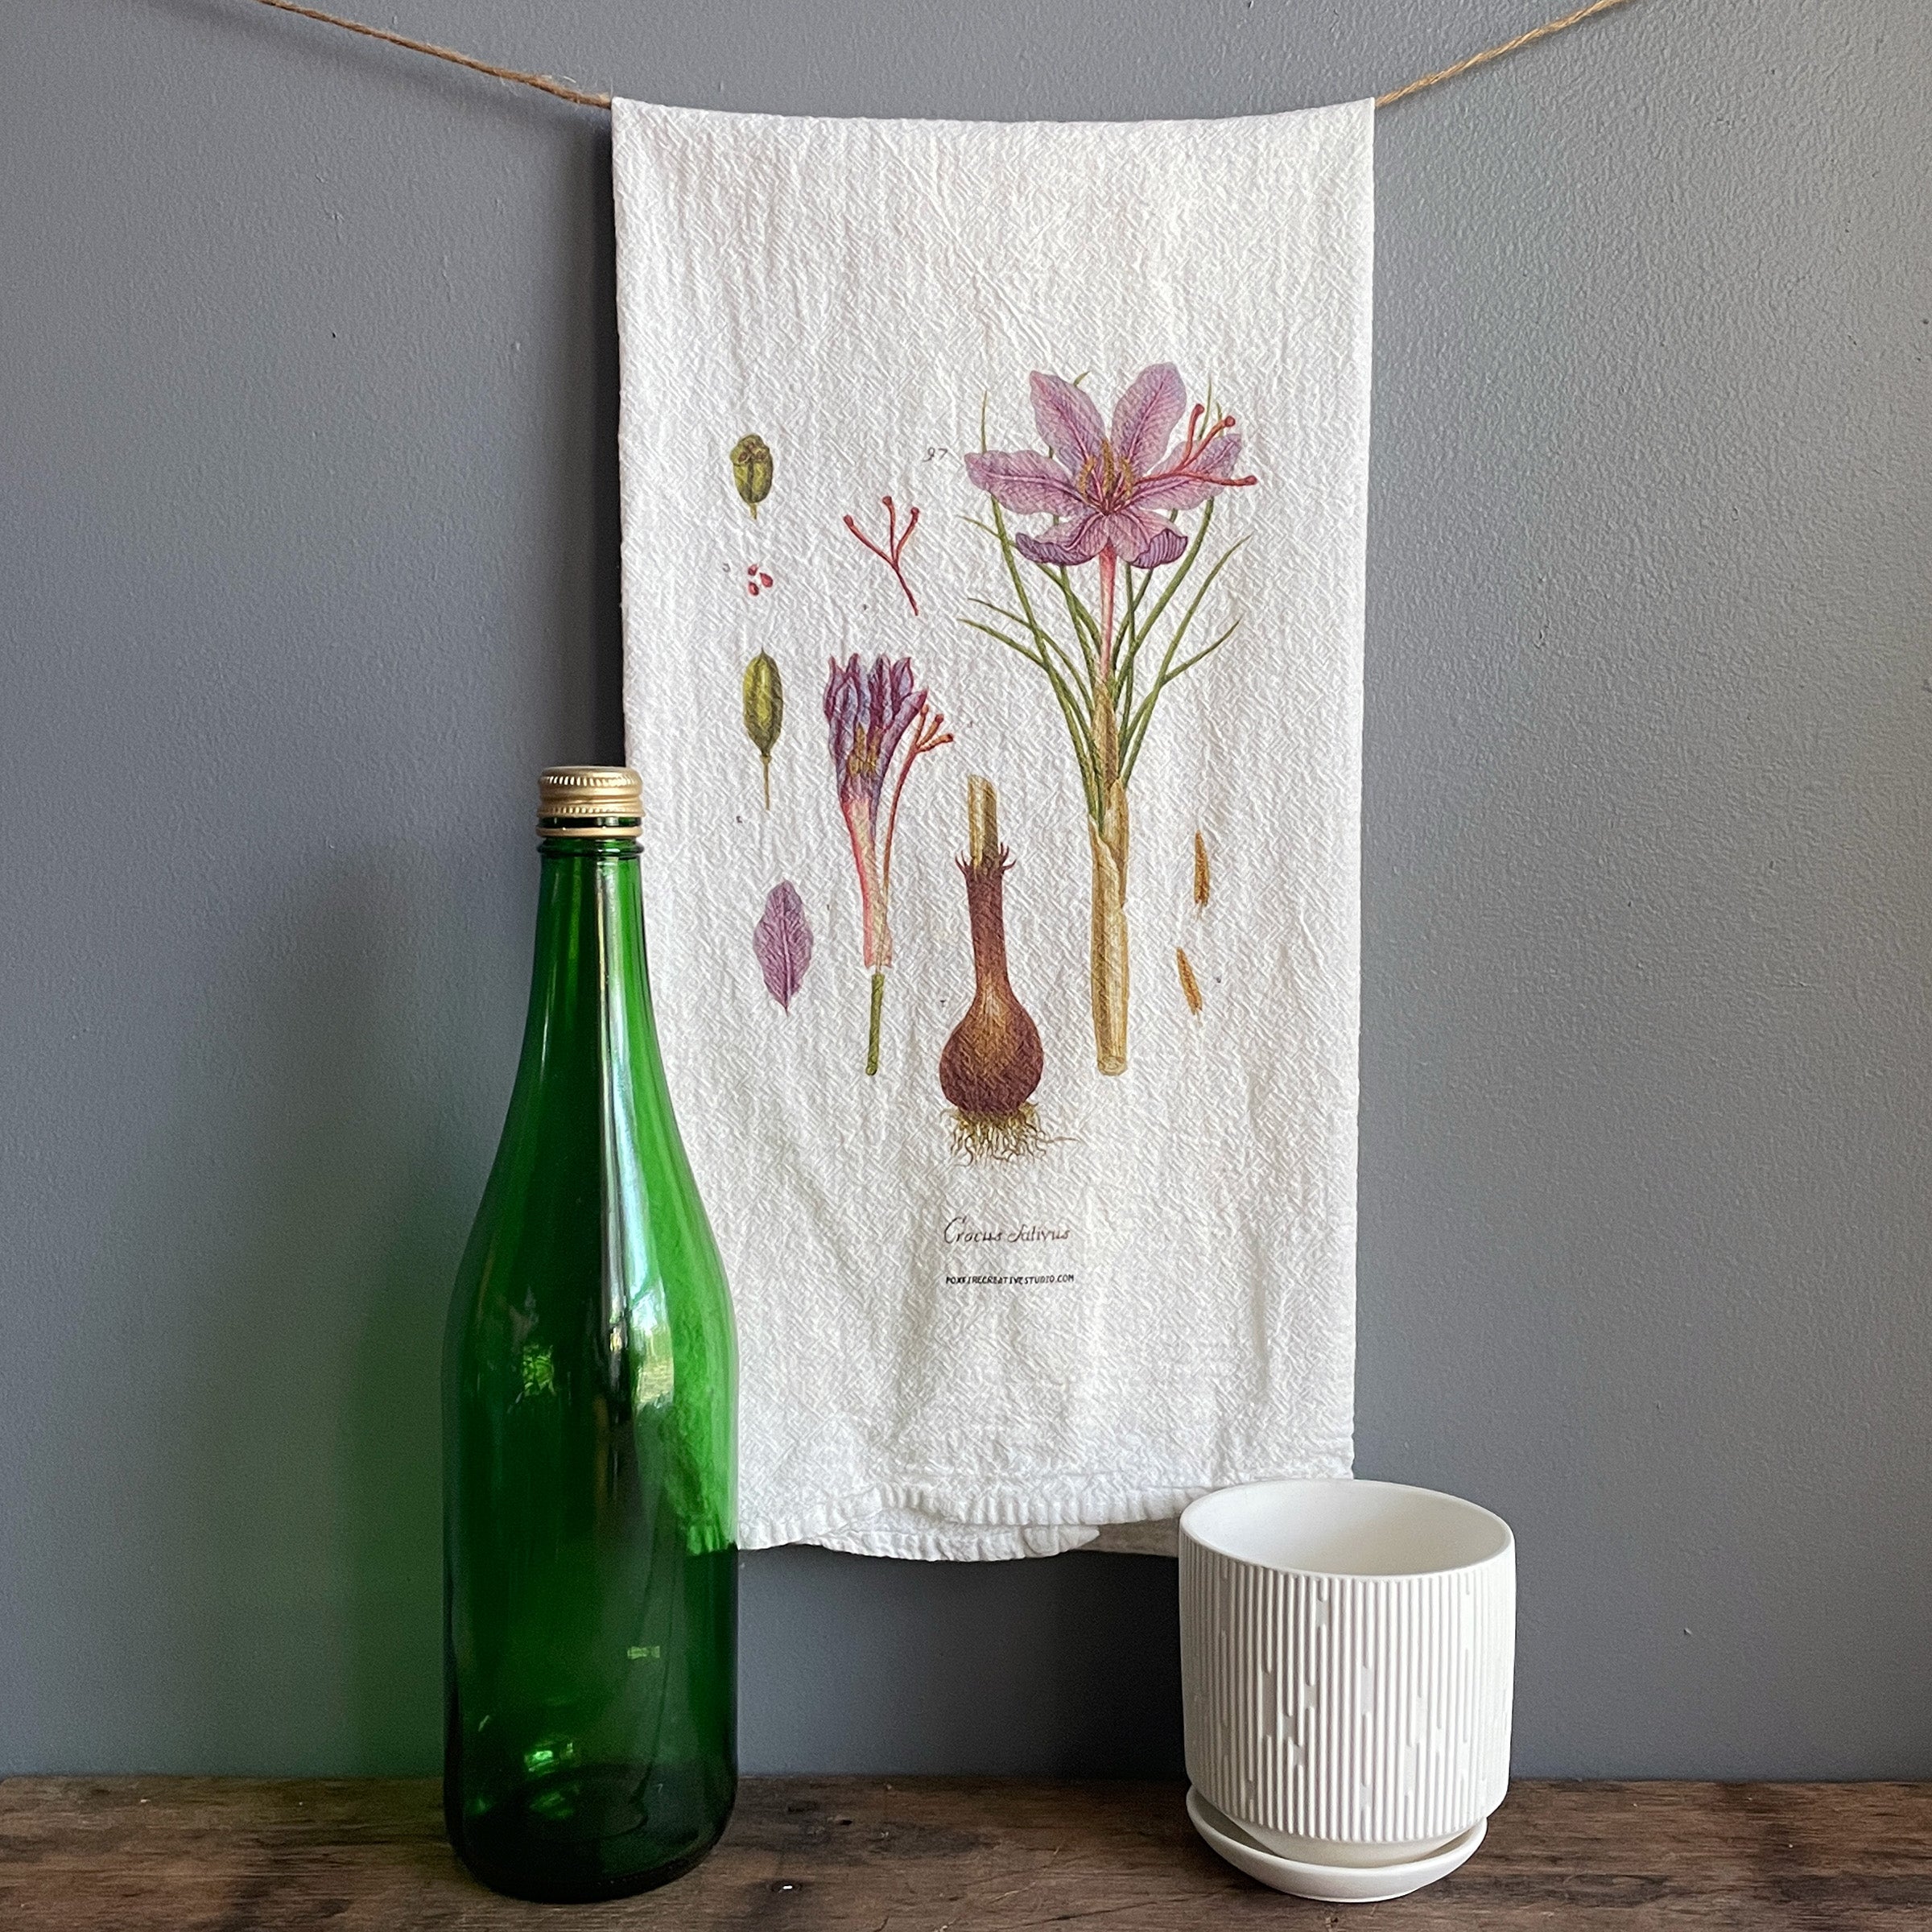 Corgi Tea Towel in Rust - Hand Printed Flour Sack Tea Towel